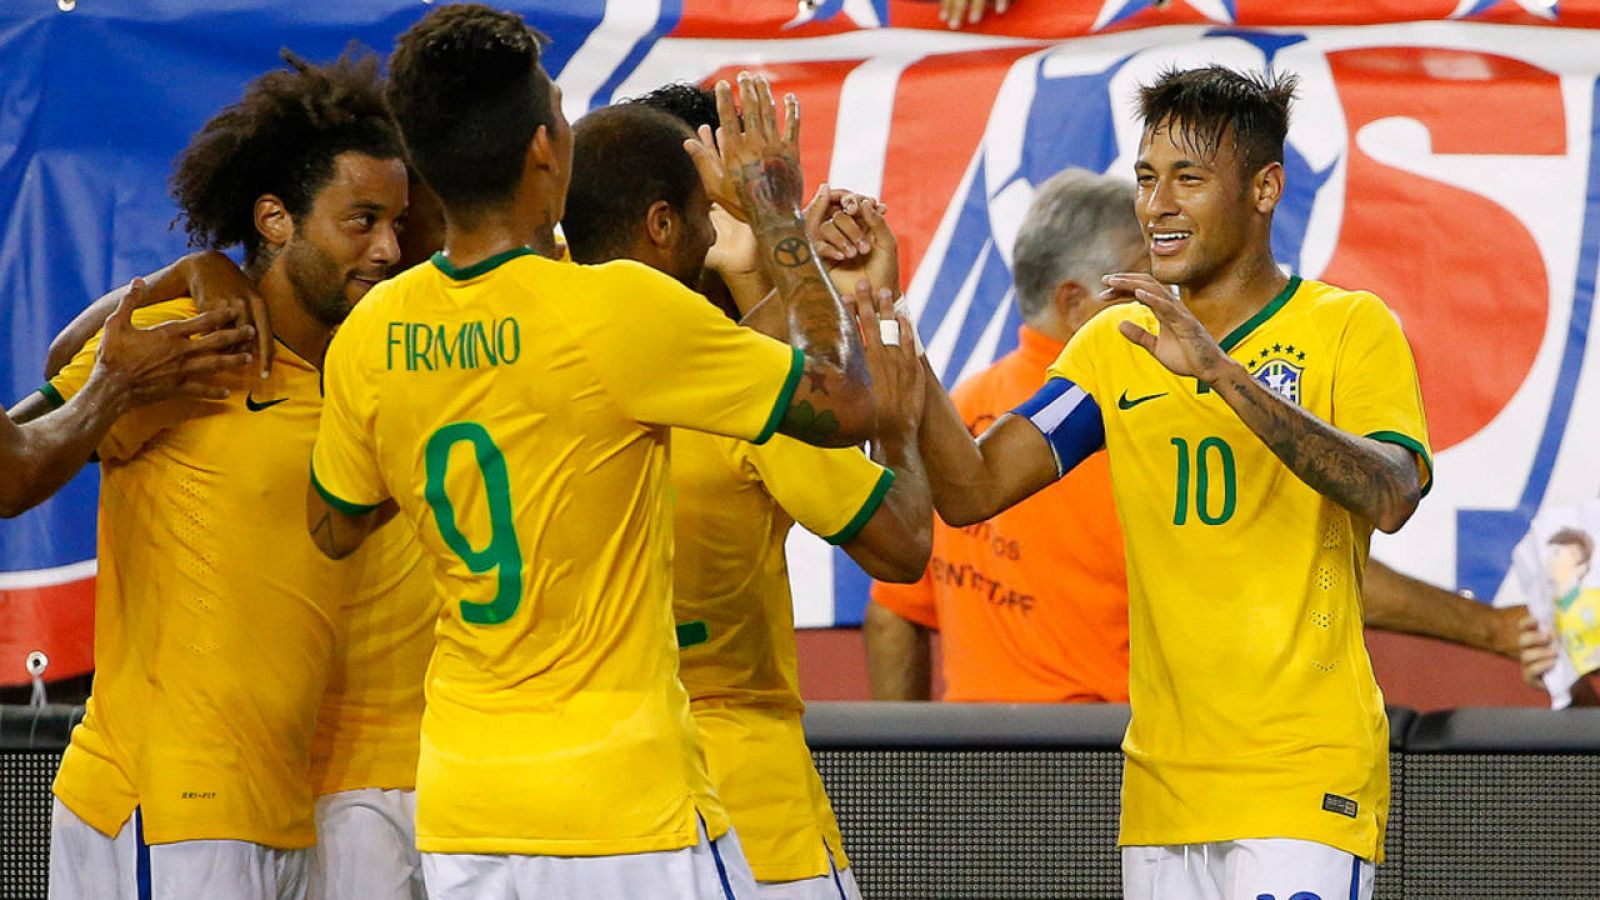  El delantero del FC Barcelona Neymar ha sido el jugador más destacado en la victoria de Brasil ante Estados Unidos por 1-4, en partido amistoso.